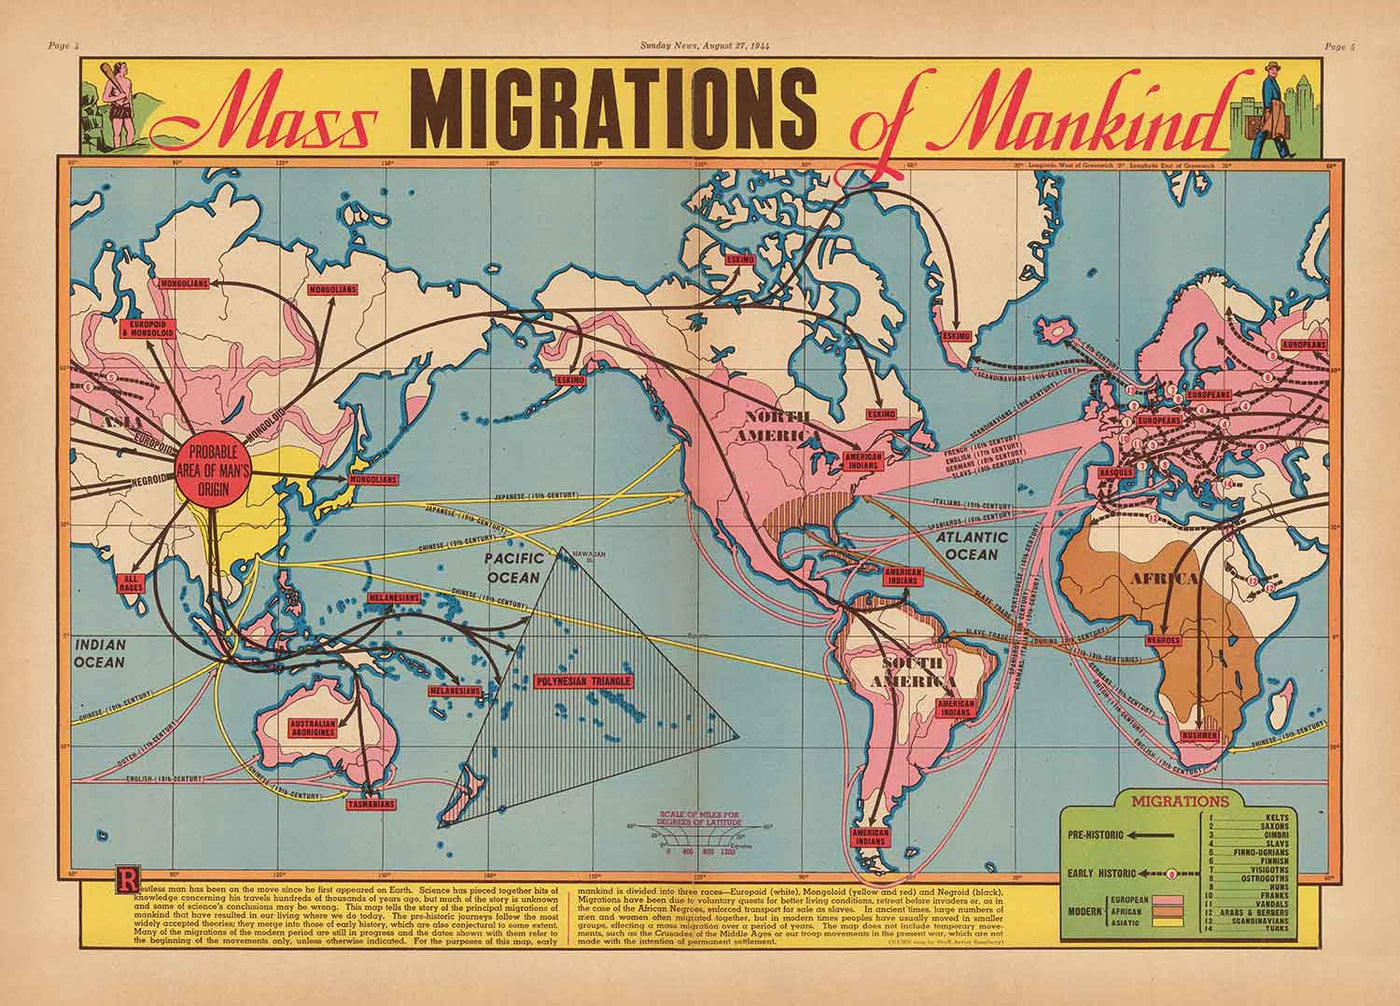 Alte Karte der Massenmigrationen der Menschheit, 1944 von Edwin Sundberg - Theorie über die Herkunft aus Asien, Sklavenhandel, prähistorische Zivilisation